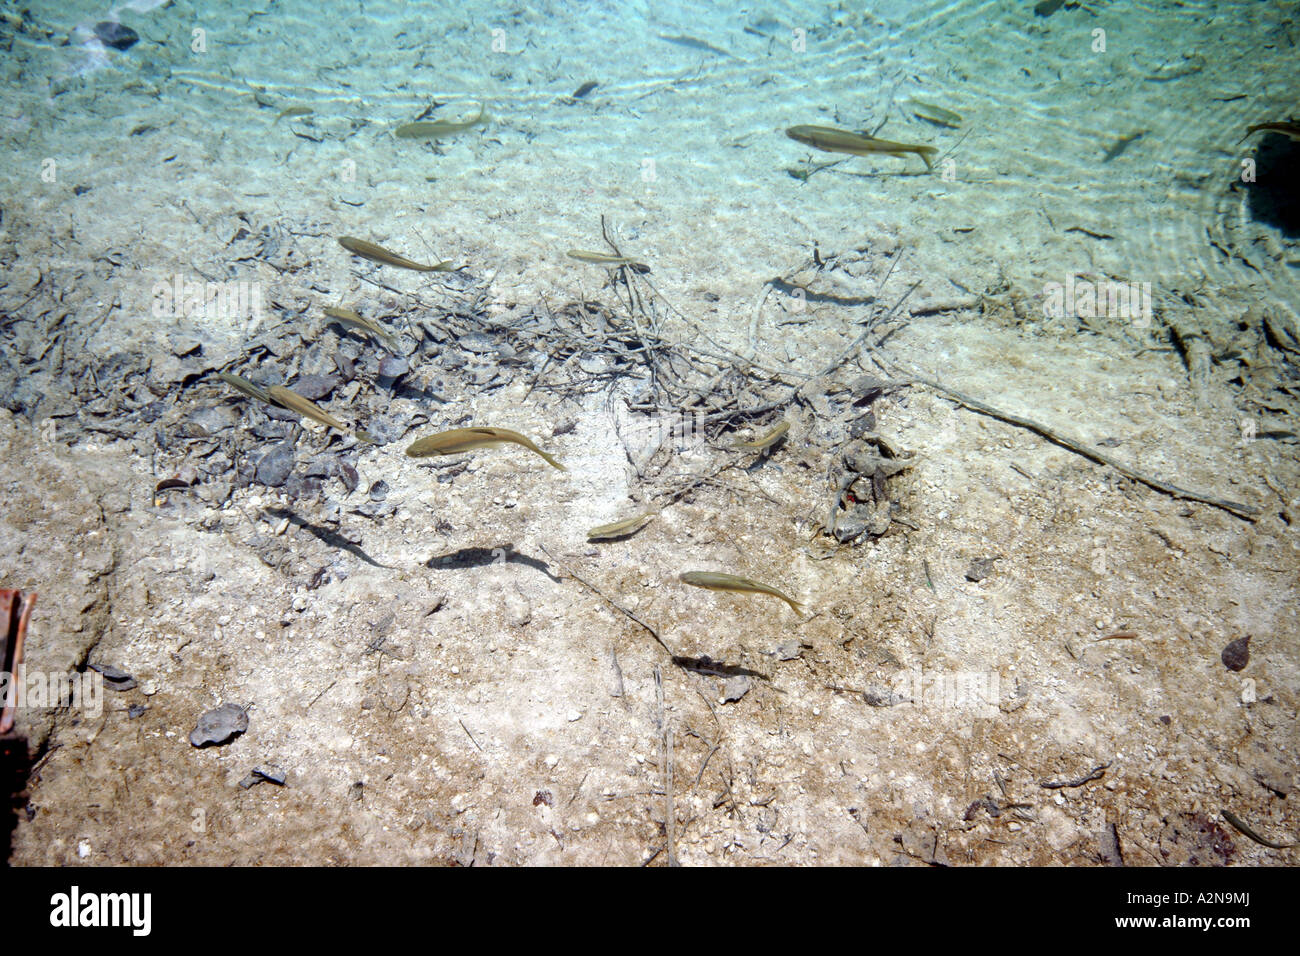 Paisaje de Jiuzhaigou: agua cristalina con peces Foto de stock